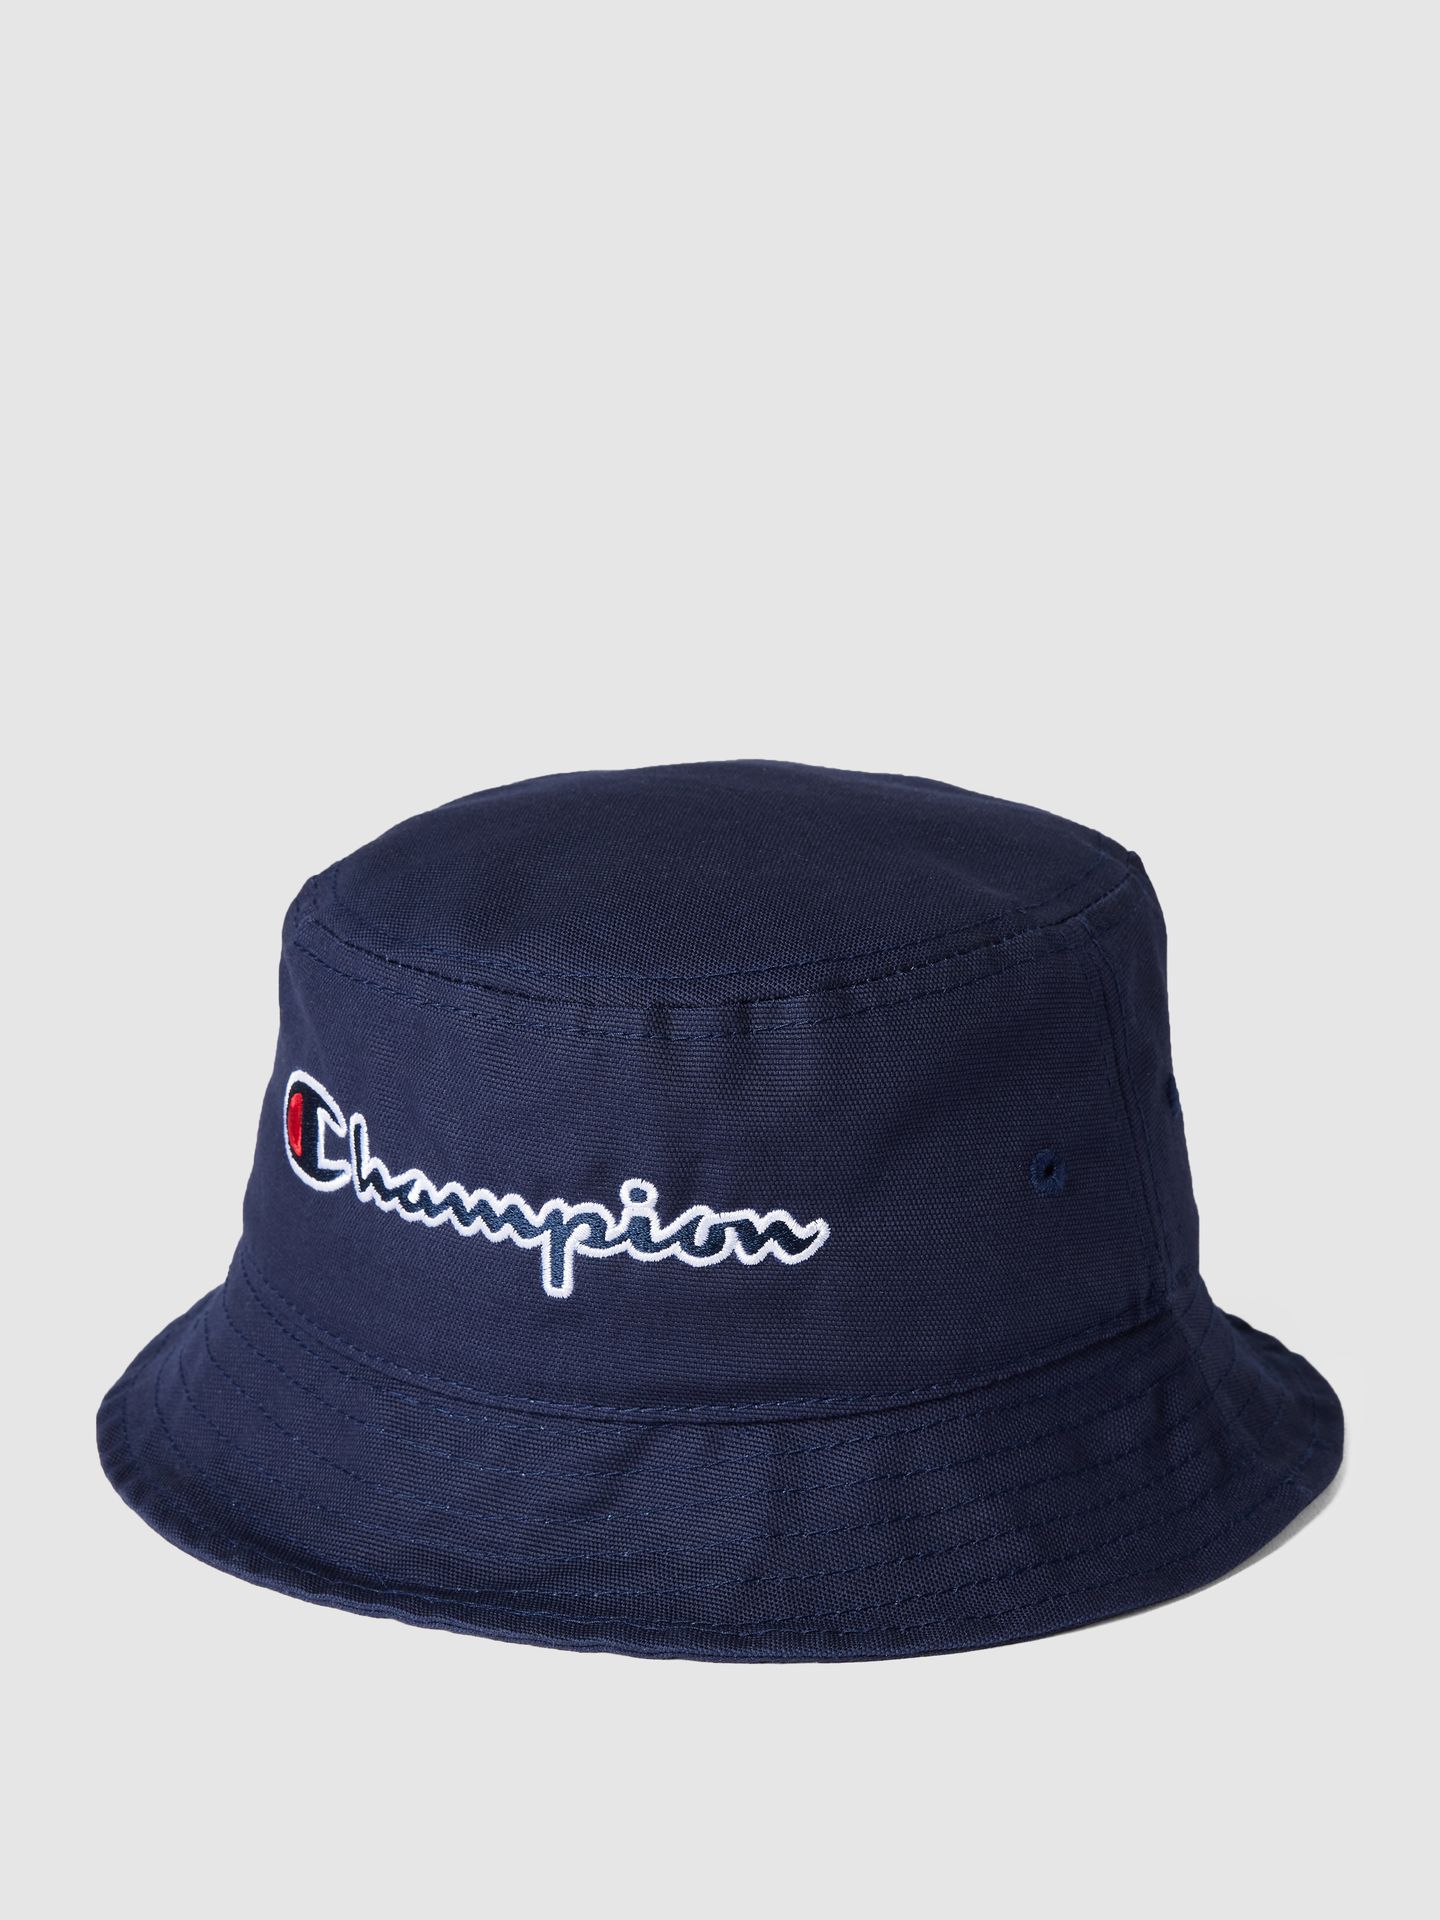 Czapka typu bucket hat z napisem z logo